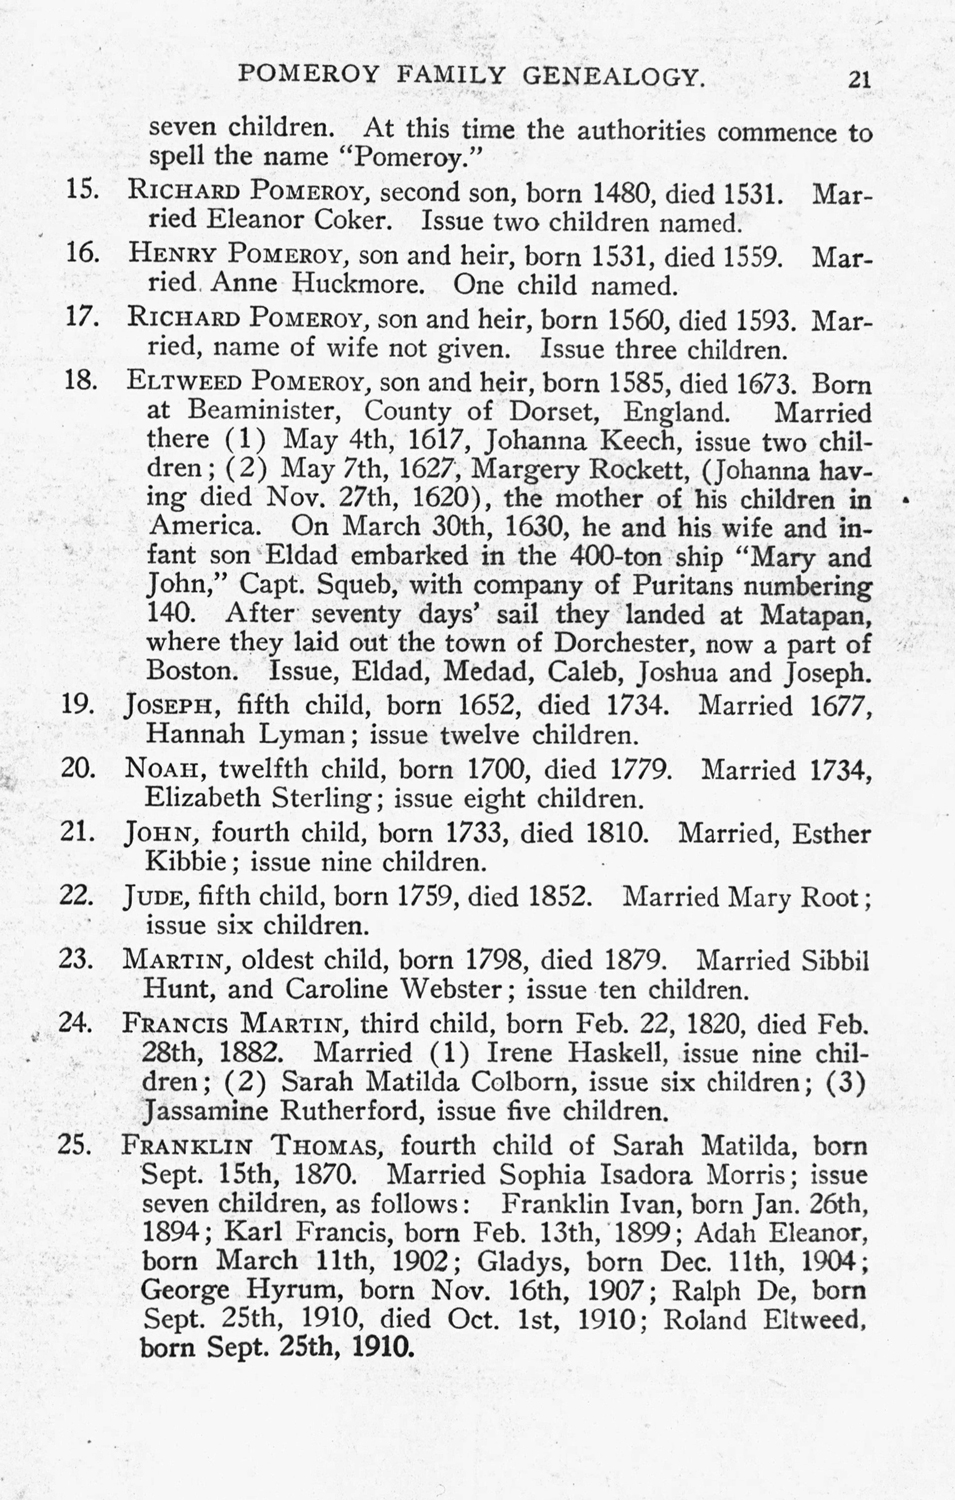 Pomeroy Family Genealogy by Franklin Thomas Pomeroy